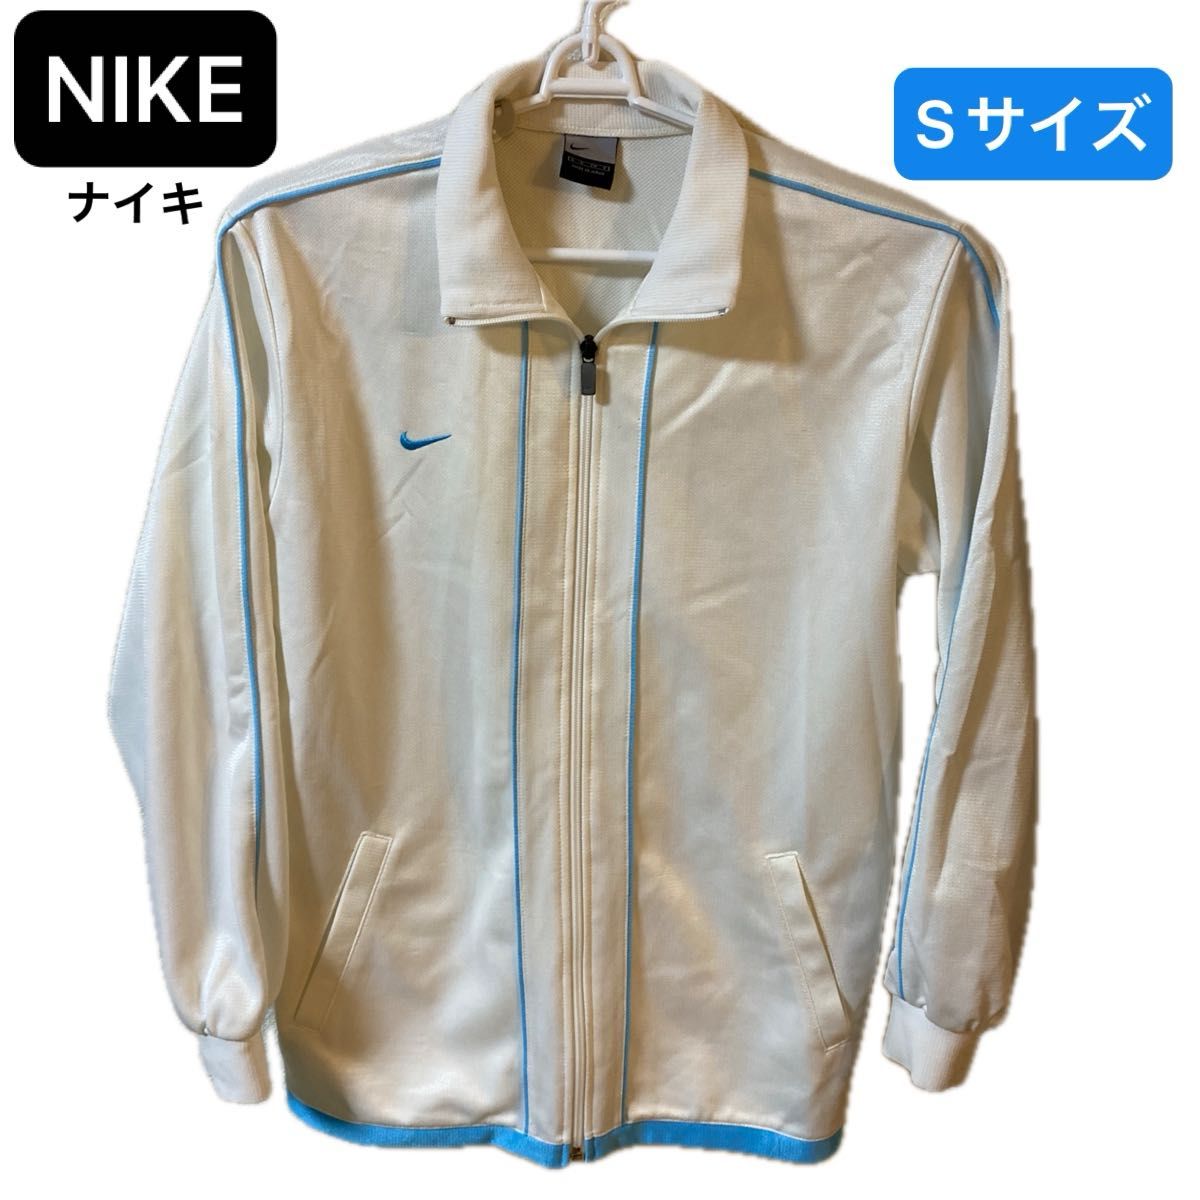 【今週のSALE】NIKE(ナイキ)トラックジャケット Sサイズ ホワイト×ブルー 男女兼用 ユニセックス